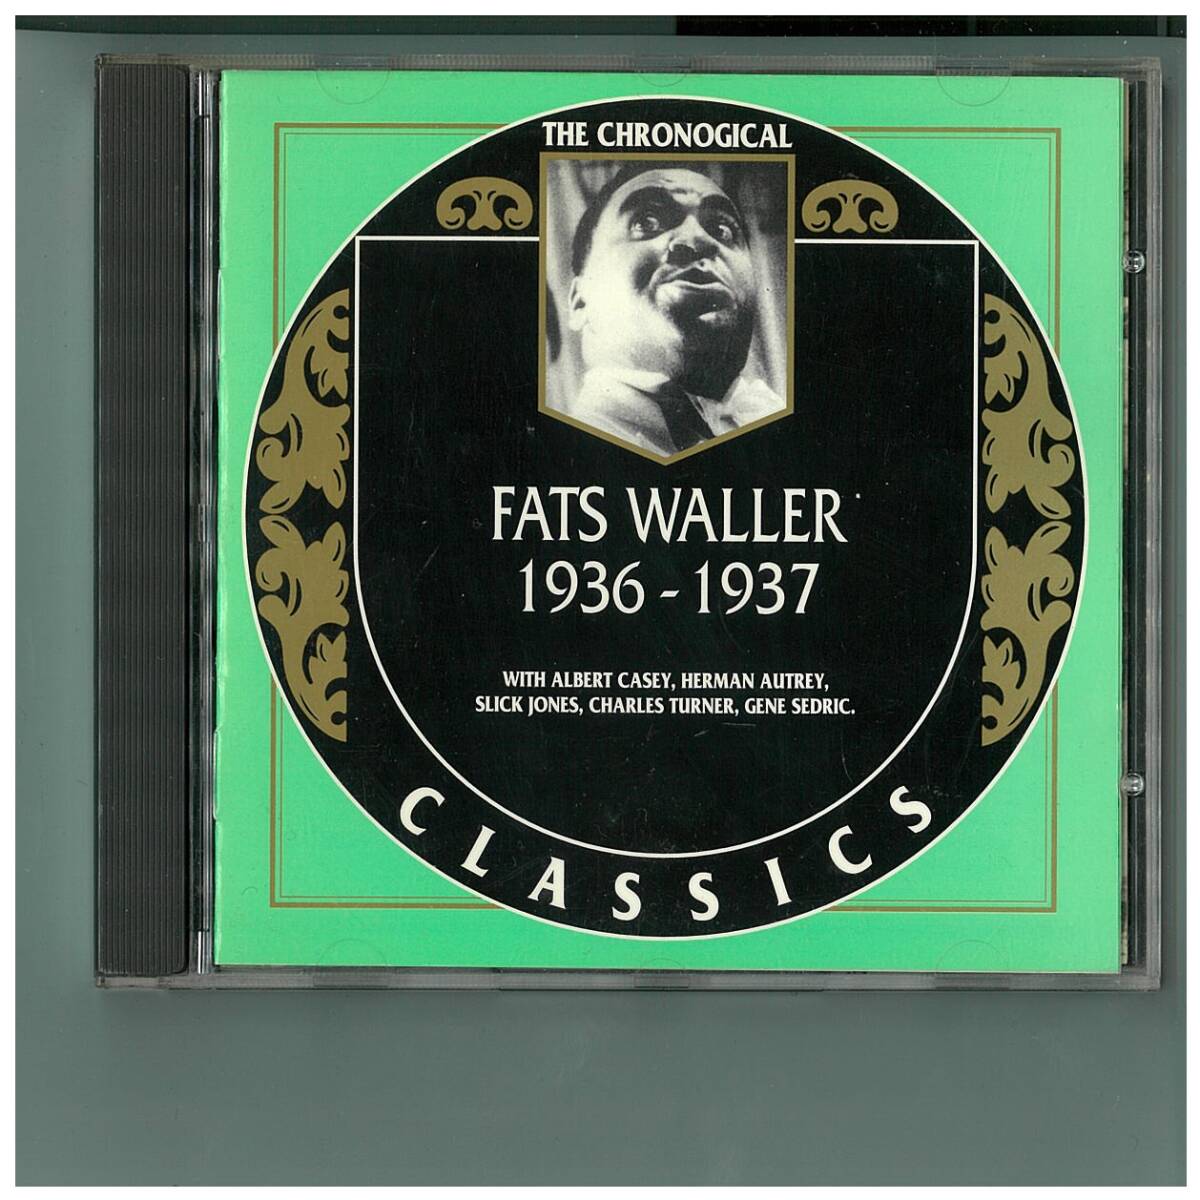 CD☆Fats Waller☆1936-1937☆フランス盤☆Classics 816_画像1